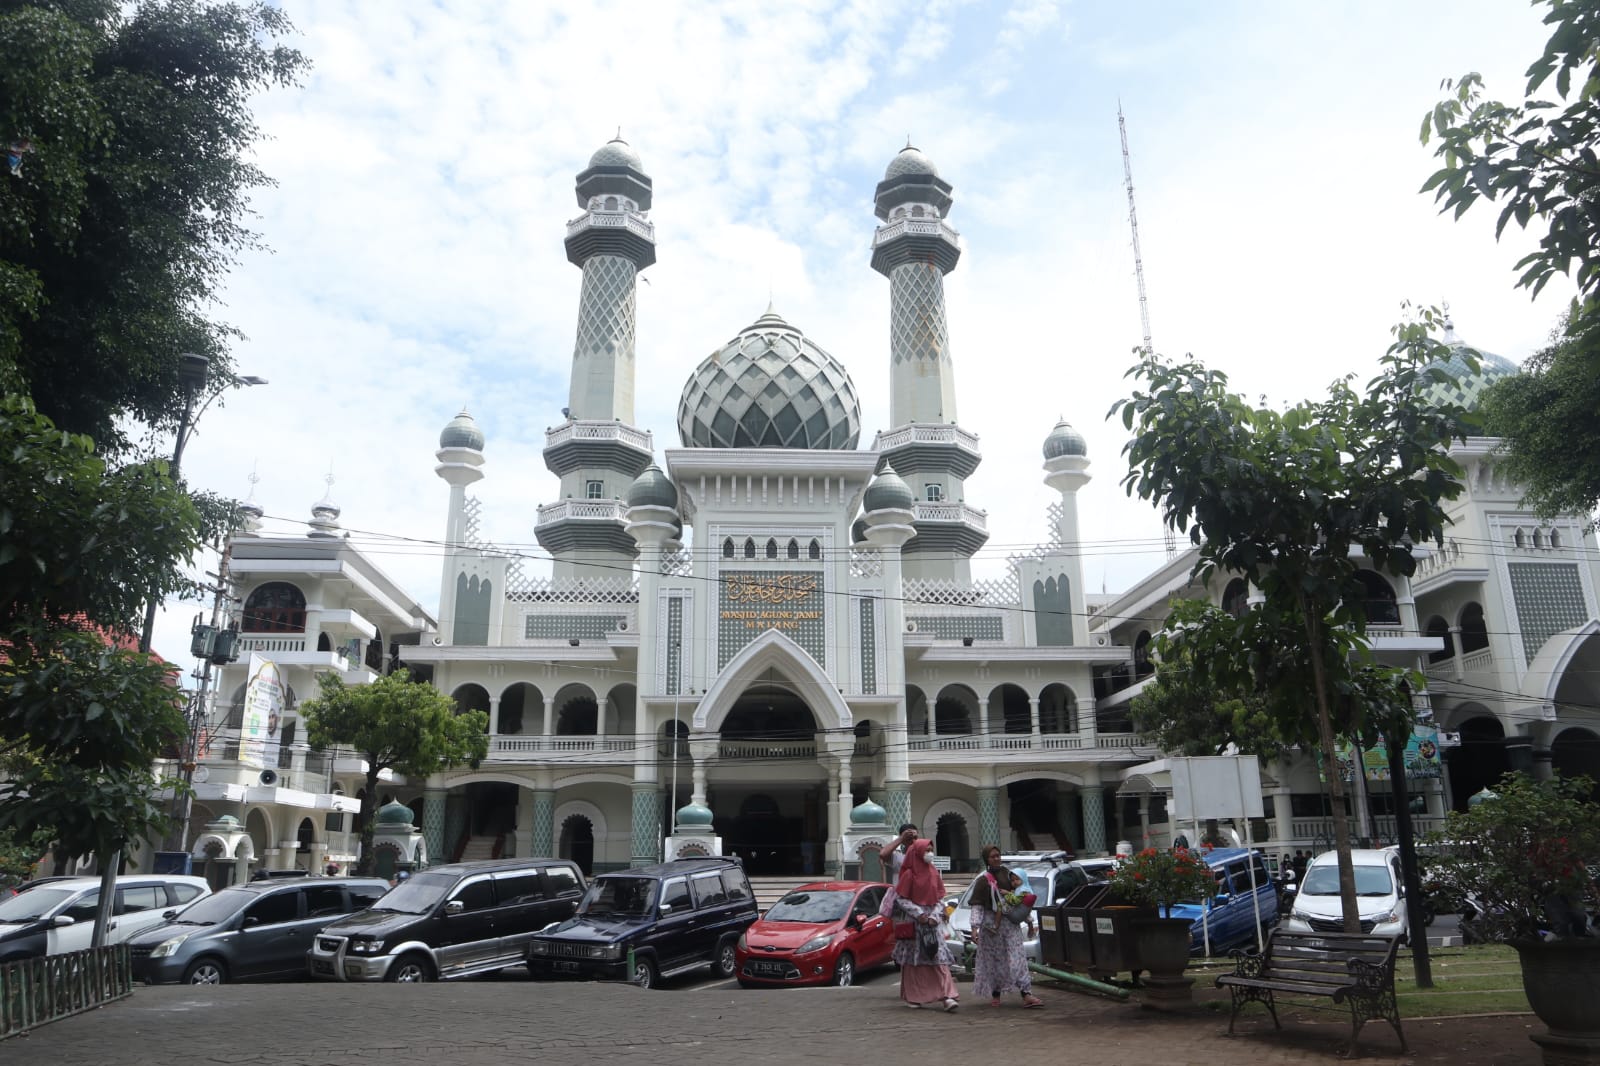 Masjid Agung Jami' Kota Malang